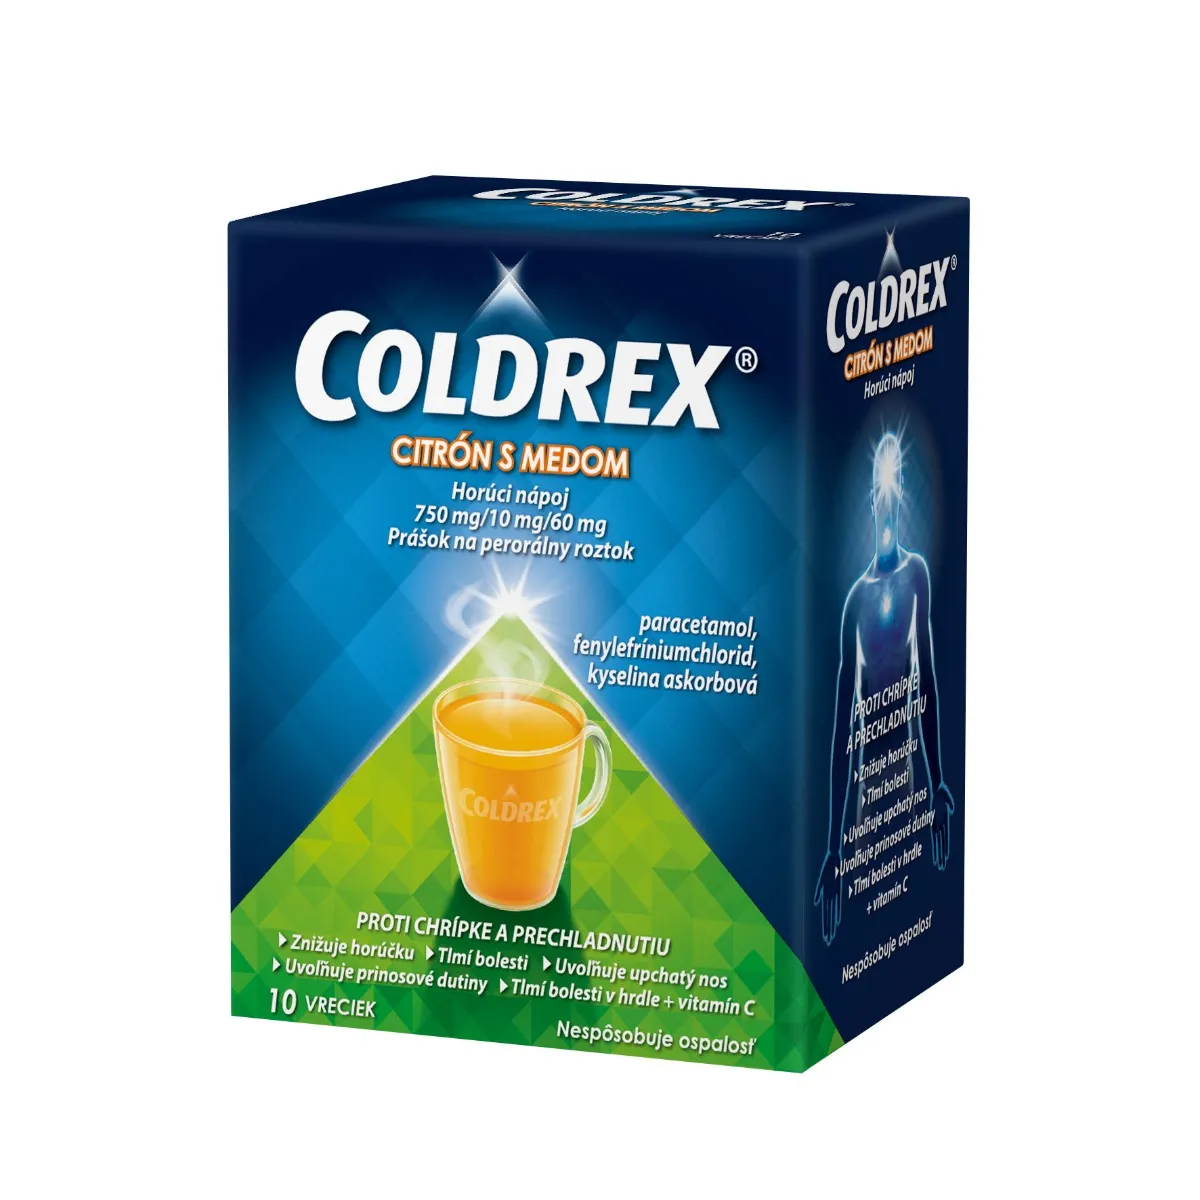 Coldrex Horúci nápoj Citrón s medom 1×10 ks, 1 vrecko = 5g